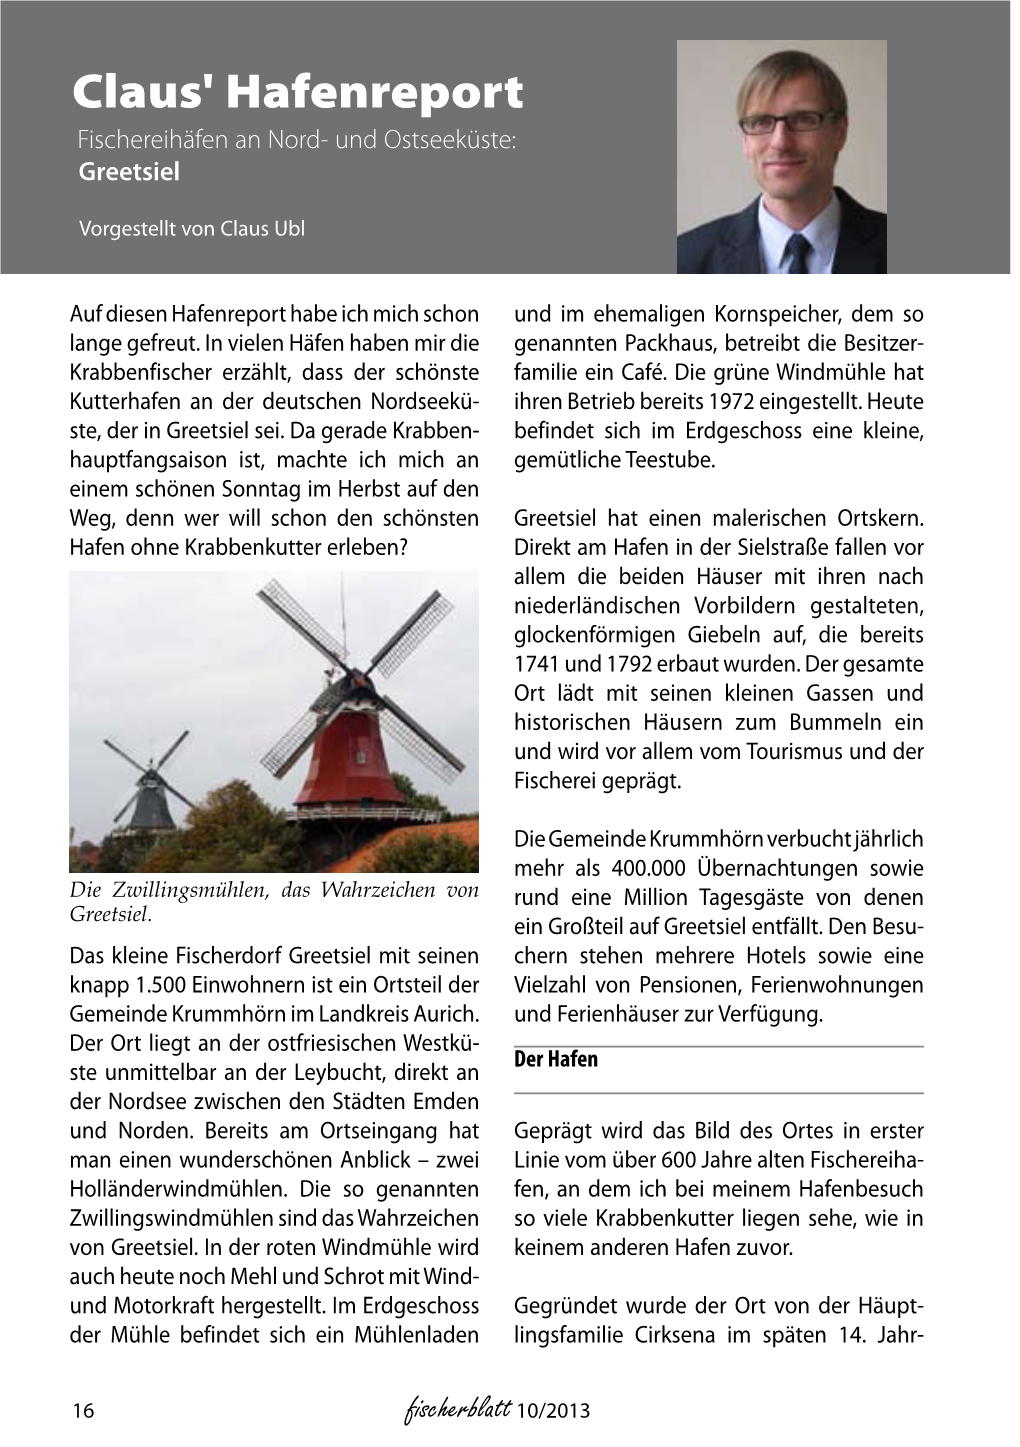 Fischerblatt 10/2013 Hundert